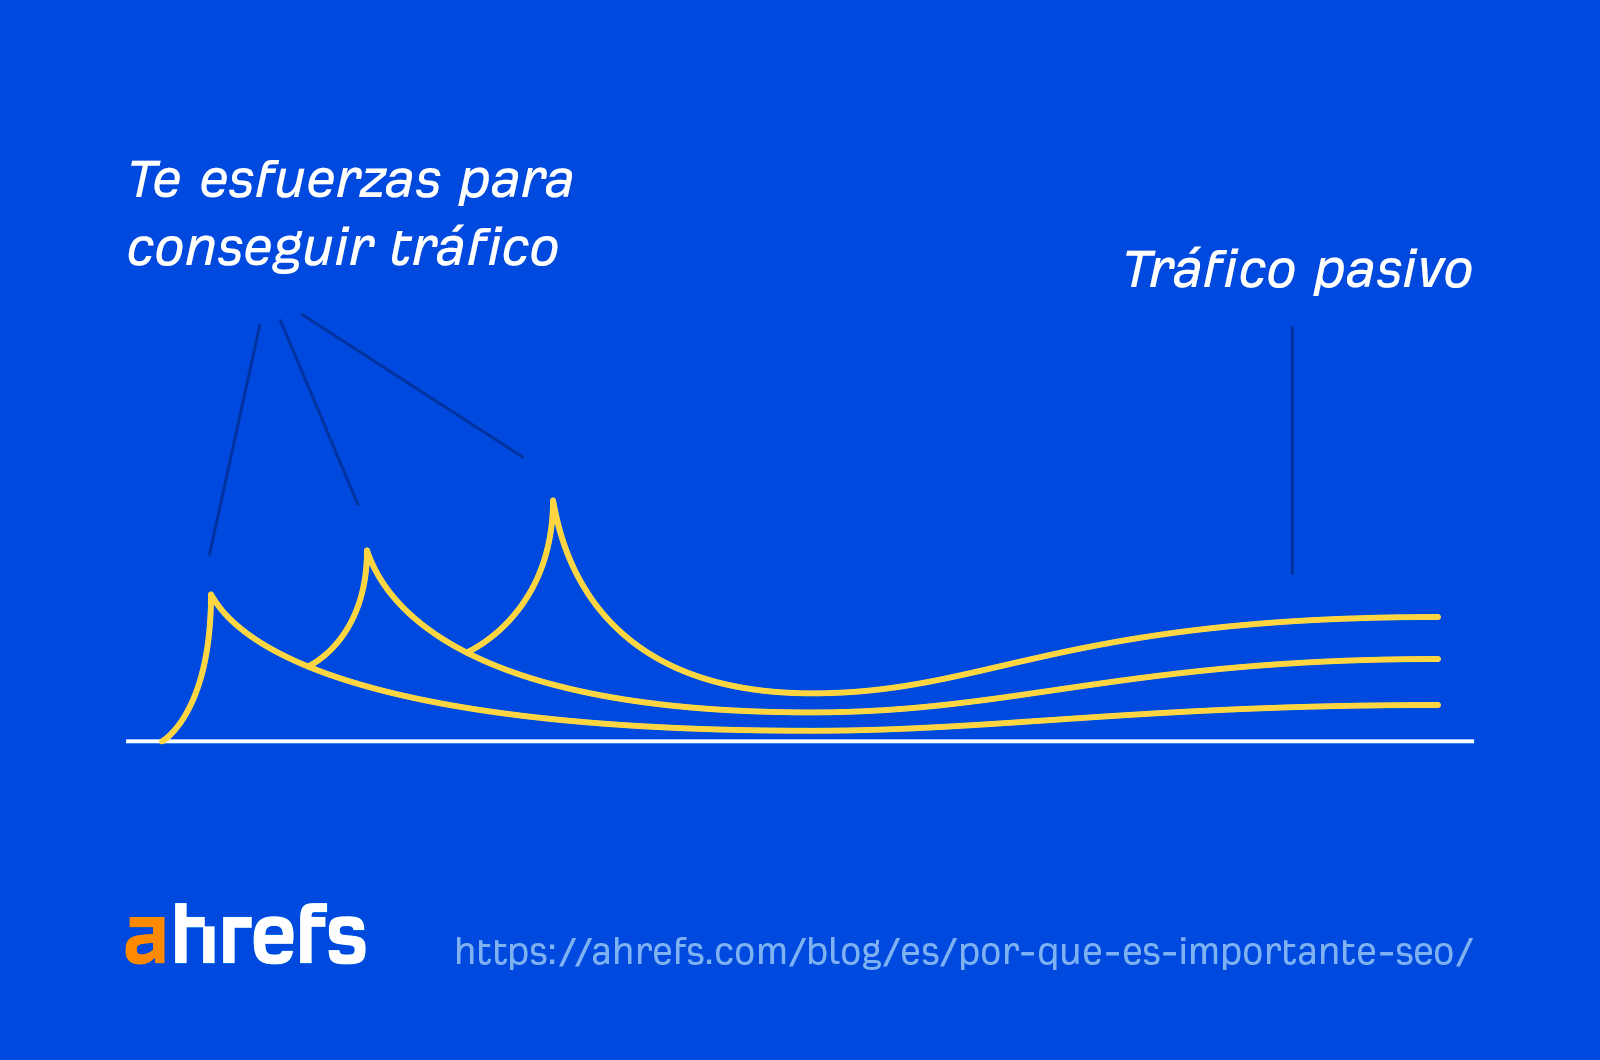 Un gráfico lineal que muestra un pico de tráfico inicial y luego un flujo de tráfico consistente.